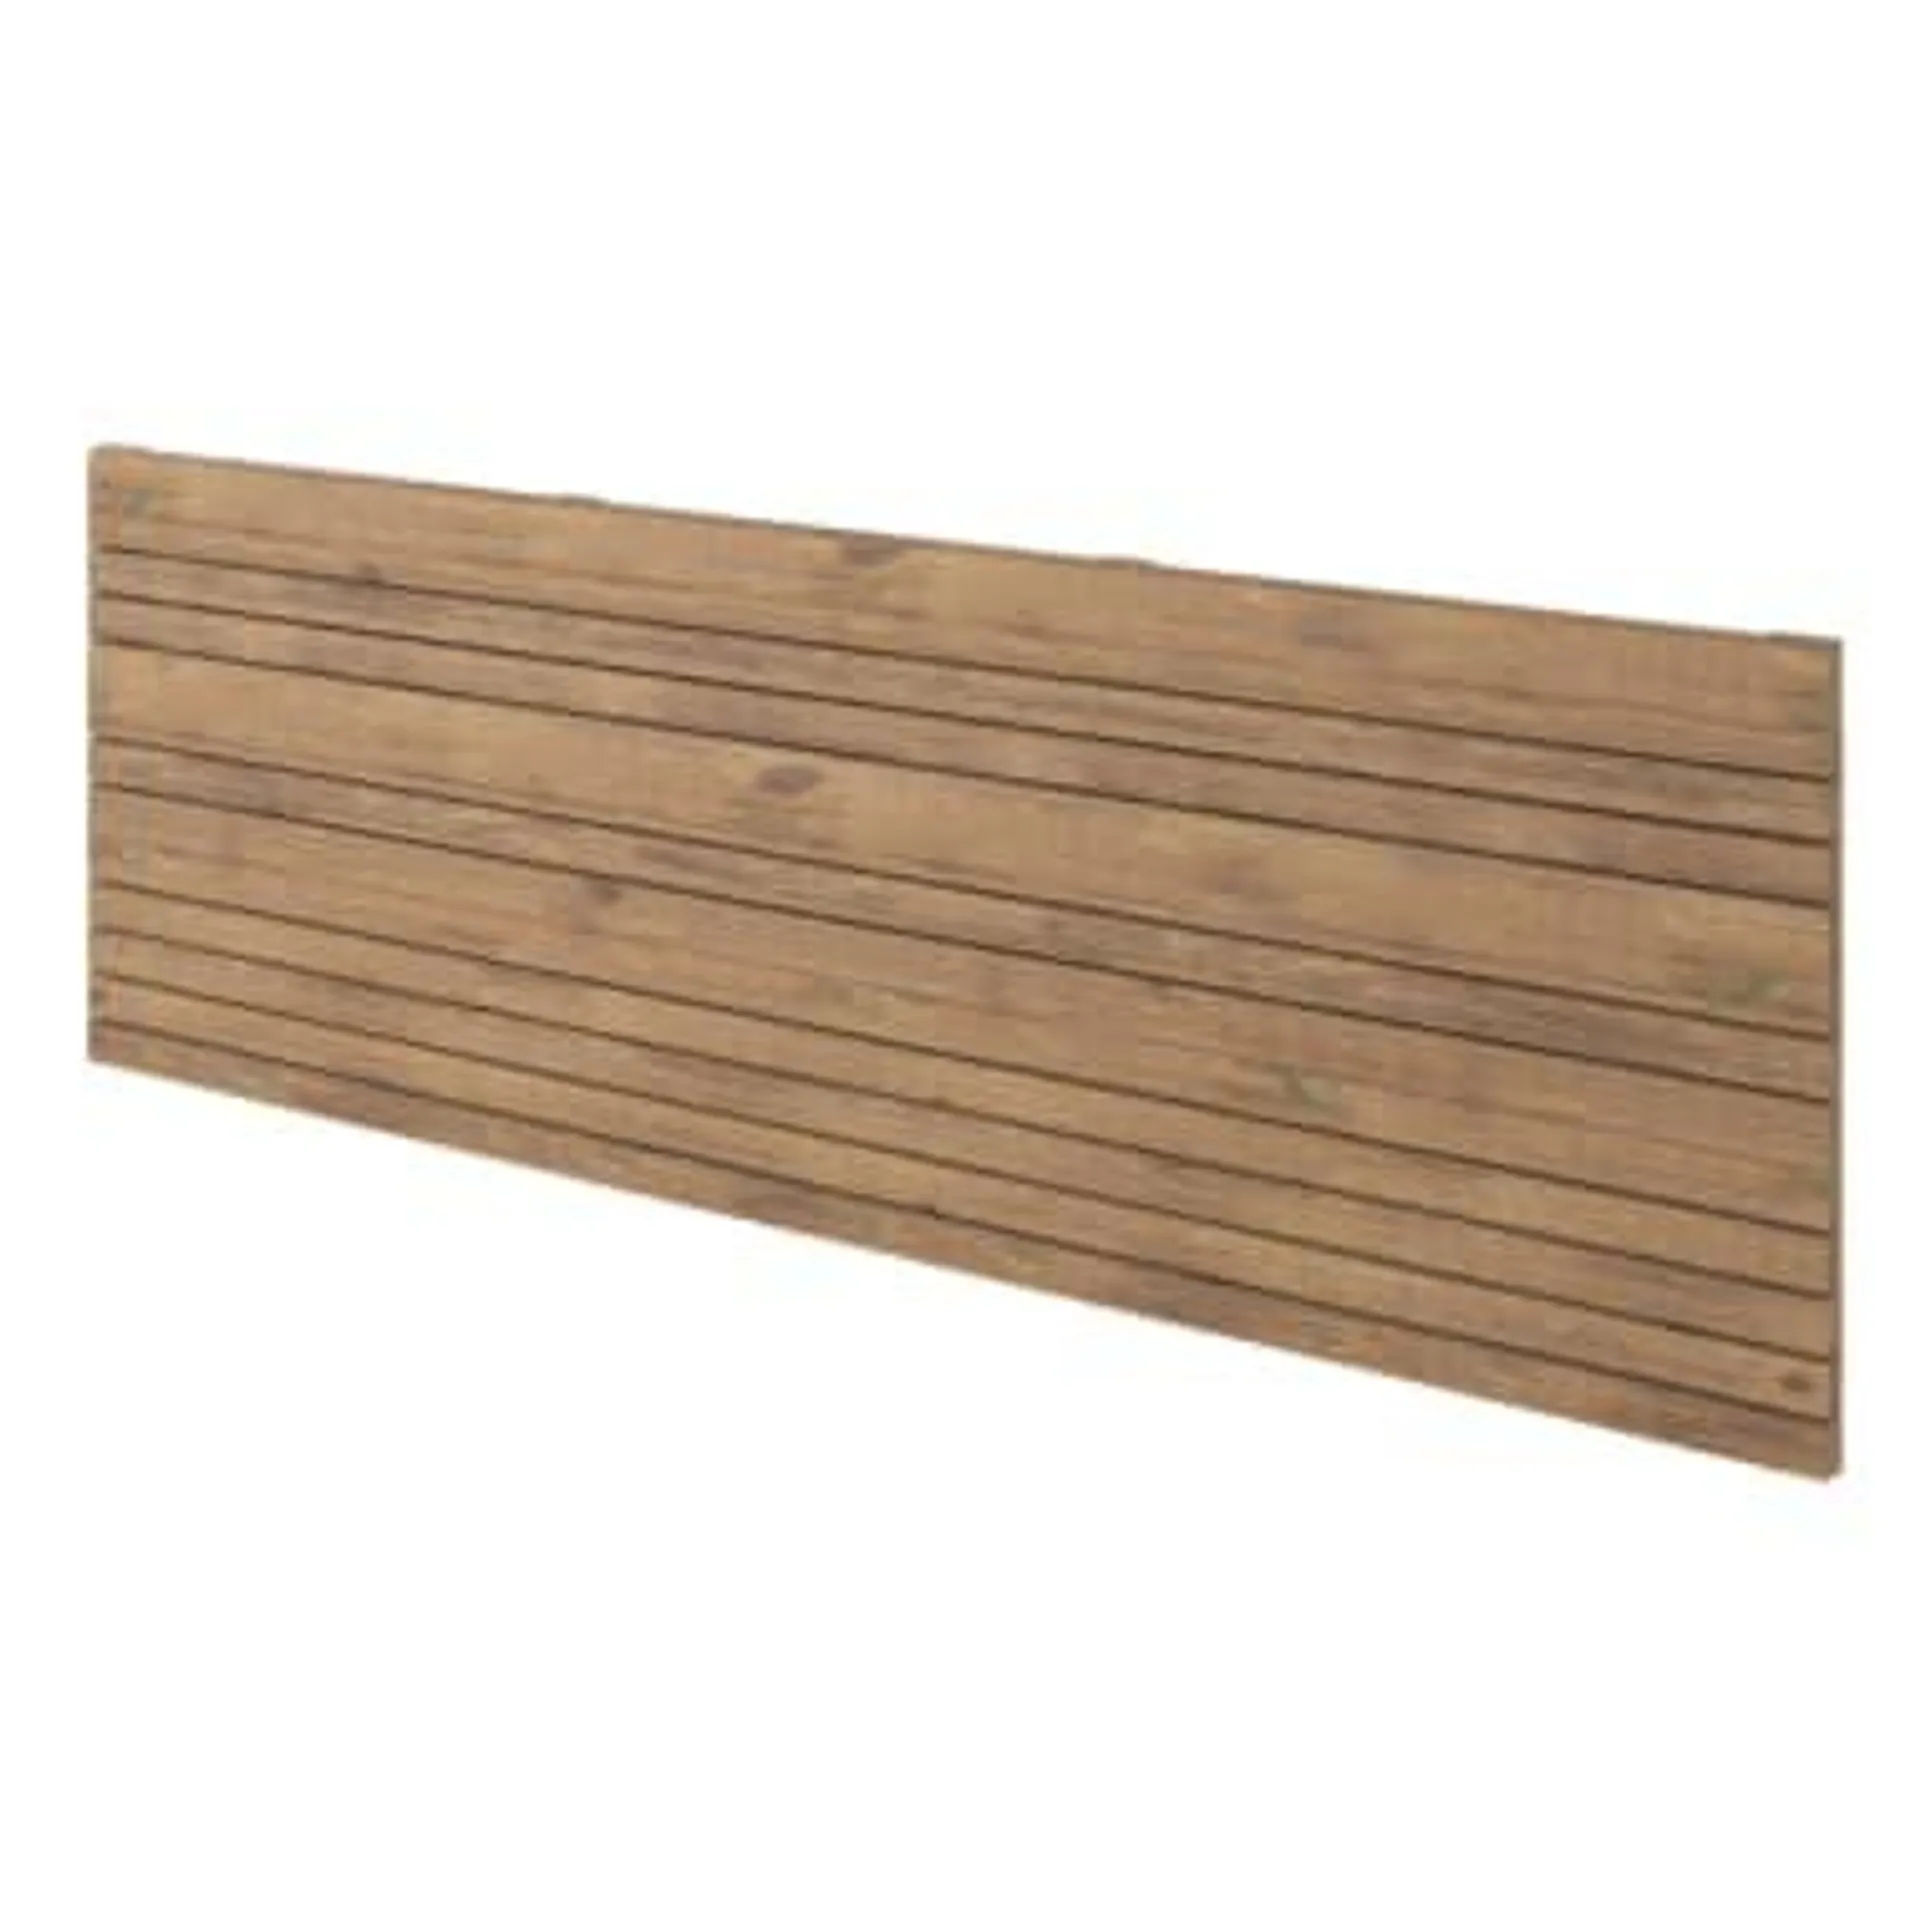 Panel ocultación madera Skimia V1 marrón 180x60 cm